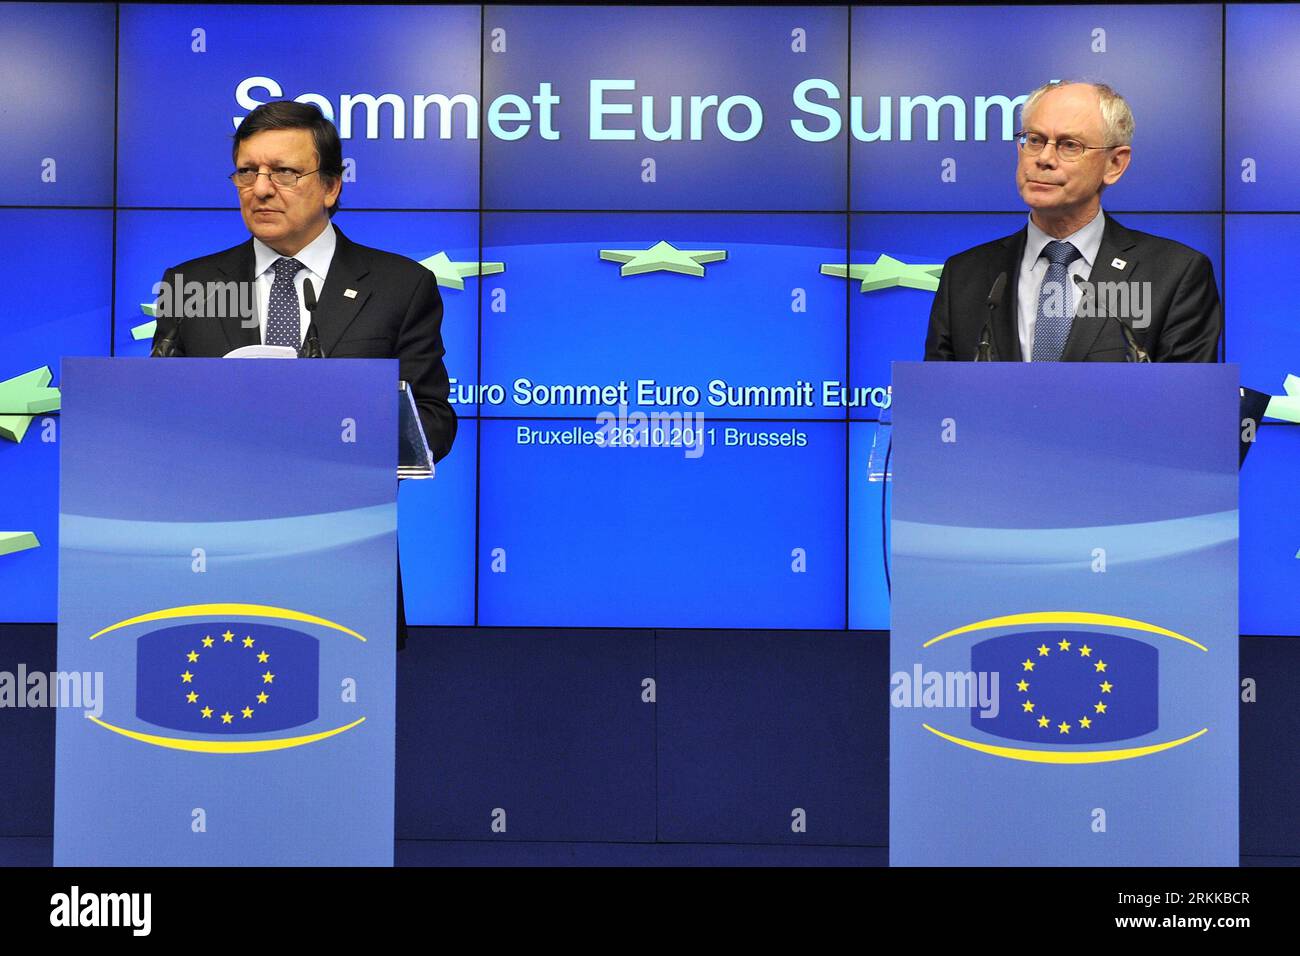 Bildnummer: 56220740 Datum: 27.10.2011 Copyright: imago/Xinhua (111027) -- BRUXELLES, 27 ottobre 2011 (Xinhua) -- il presidente della Commissione europea Jose Manuel Barroso (L) e il presidente del Consiglio europeo Herman Van Rompuy partecipano a una conferenza stampa dopo un vertice dell'UE a Bruxelles, capitale del Belgio, il 27 ottobre 2011. I leader europei hanno annunciato giovedì mattina presto che è stato raggiunto un piano di salvataggio tanto atteso per combattere la crisi del debito dell’euro, che comprendeva una svalutazione del 50% sul valore dei titoli di debito greci detenuti da investitori privati. (Xinhua/Wu Wei) (xhn) BELGIO-UE-EURO-SUMMIT PU Foto Stock